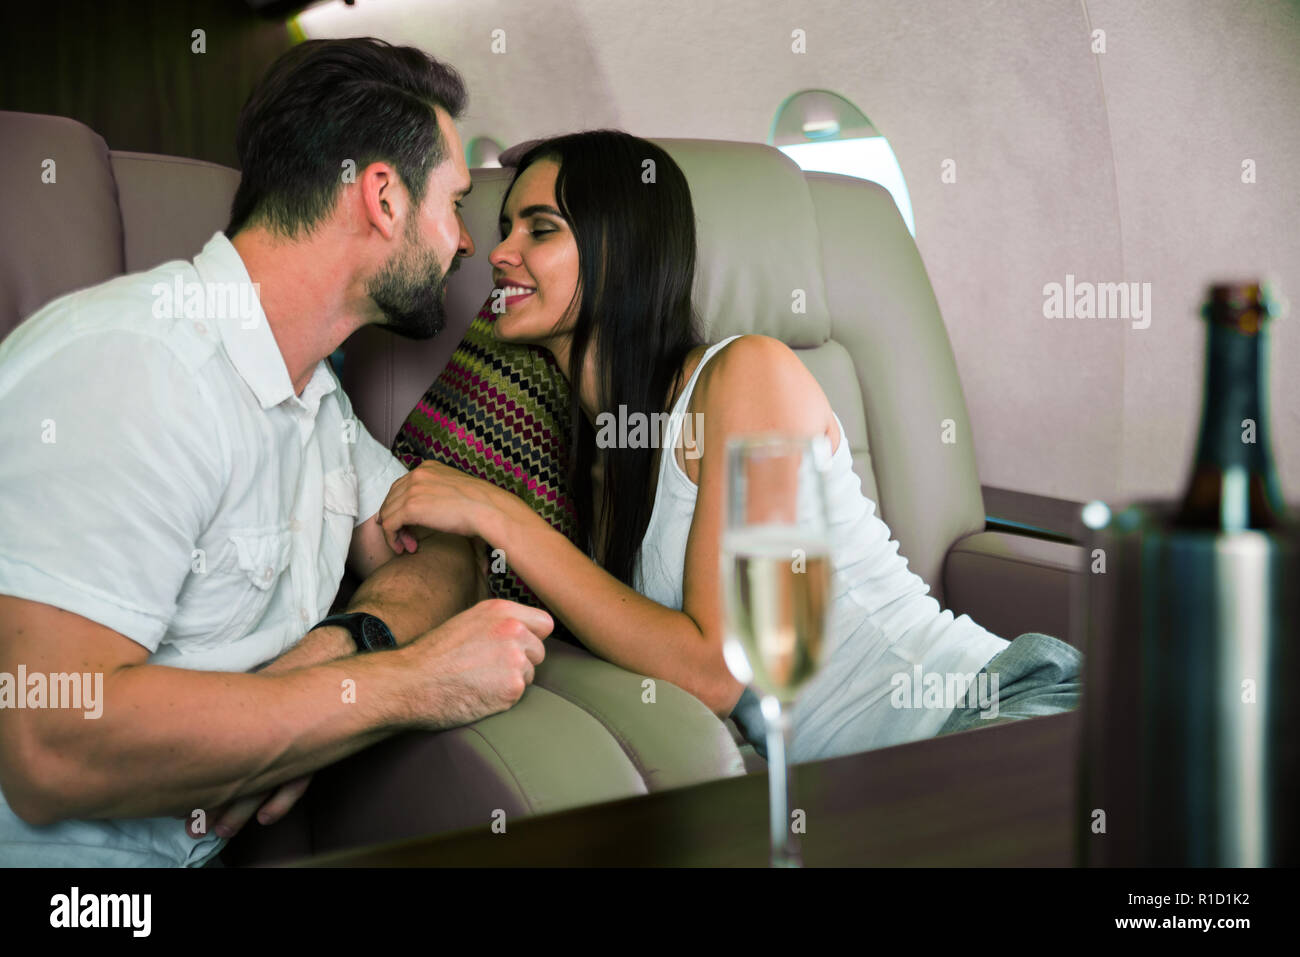 Coppia felice che viaggiano su un lusso jet privato - i giovani adulti viaggiano su un primo volo di classe, concetti sui viaggi e stile di vita Foto Stock